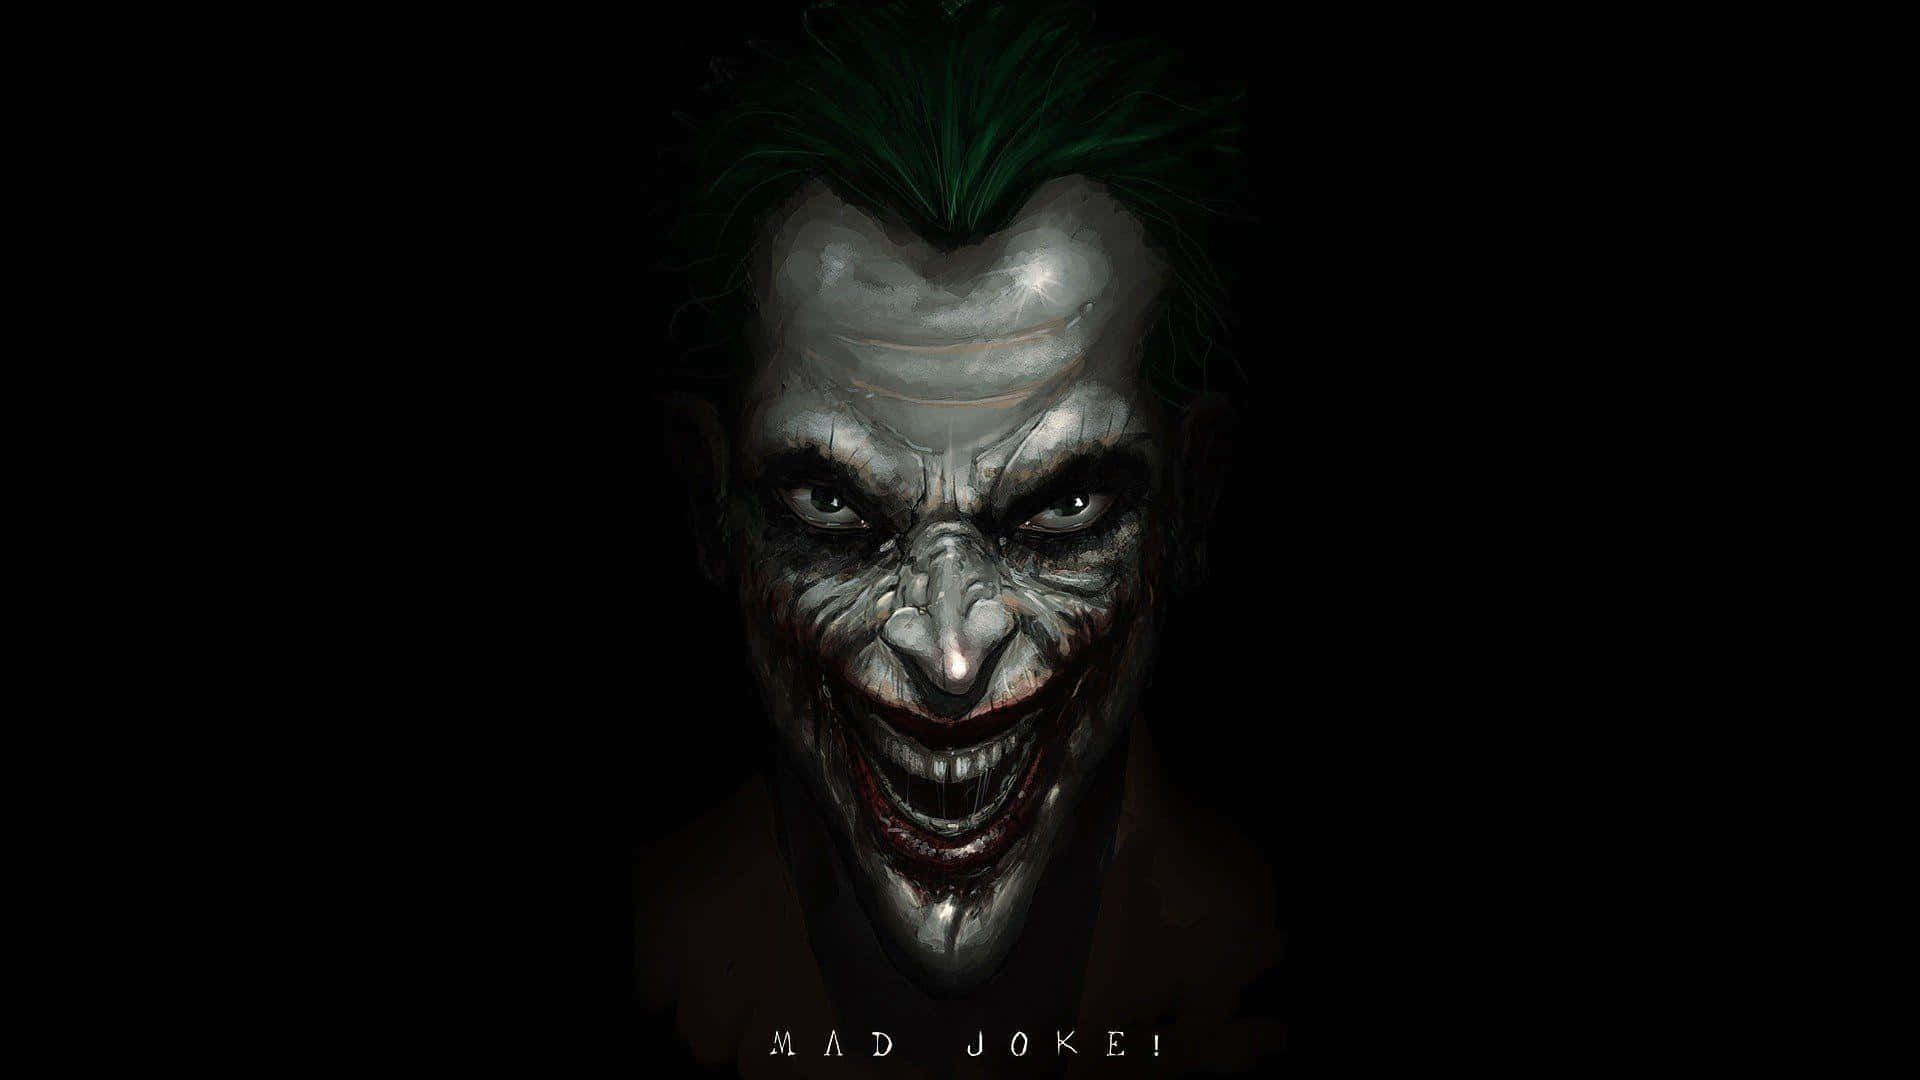 Joker's Maniacal Laughter in the Dark Wallpaper